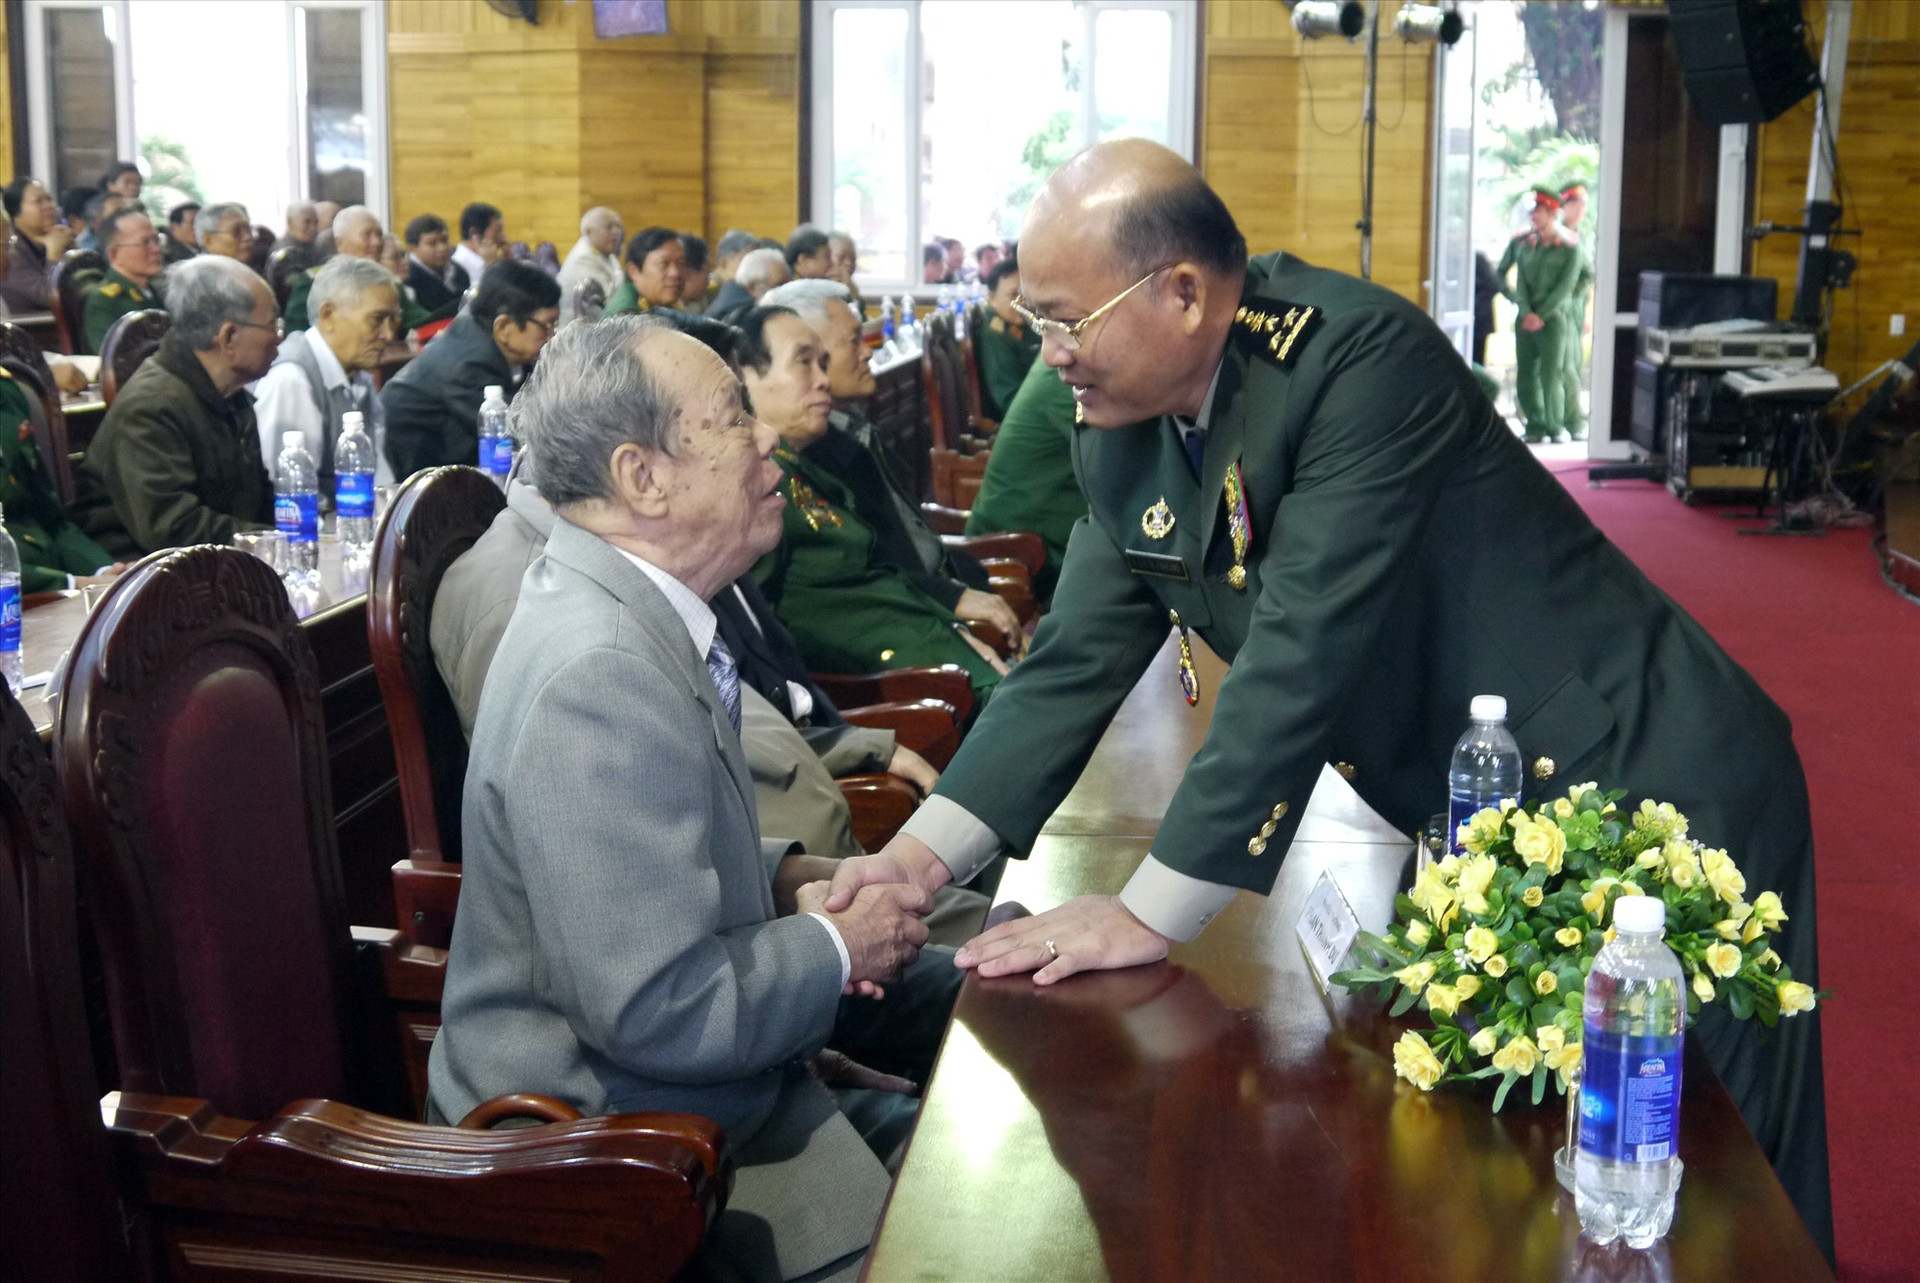 Đại tướng Huốt Chiêng, Phó tư lệnh Lục quân kiêm Tư lệnh Quân khu 1, Quân đội Hoàng gia Campuchia ân cần hỏi thăm Thiếu tướng Phan Thanh Dư (Đà Nẵng, năm 2014).